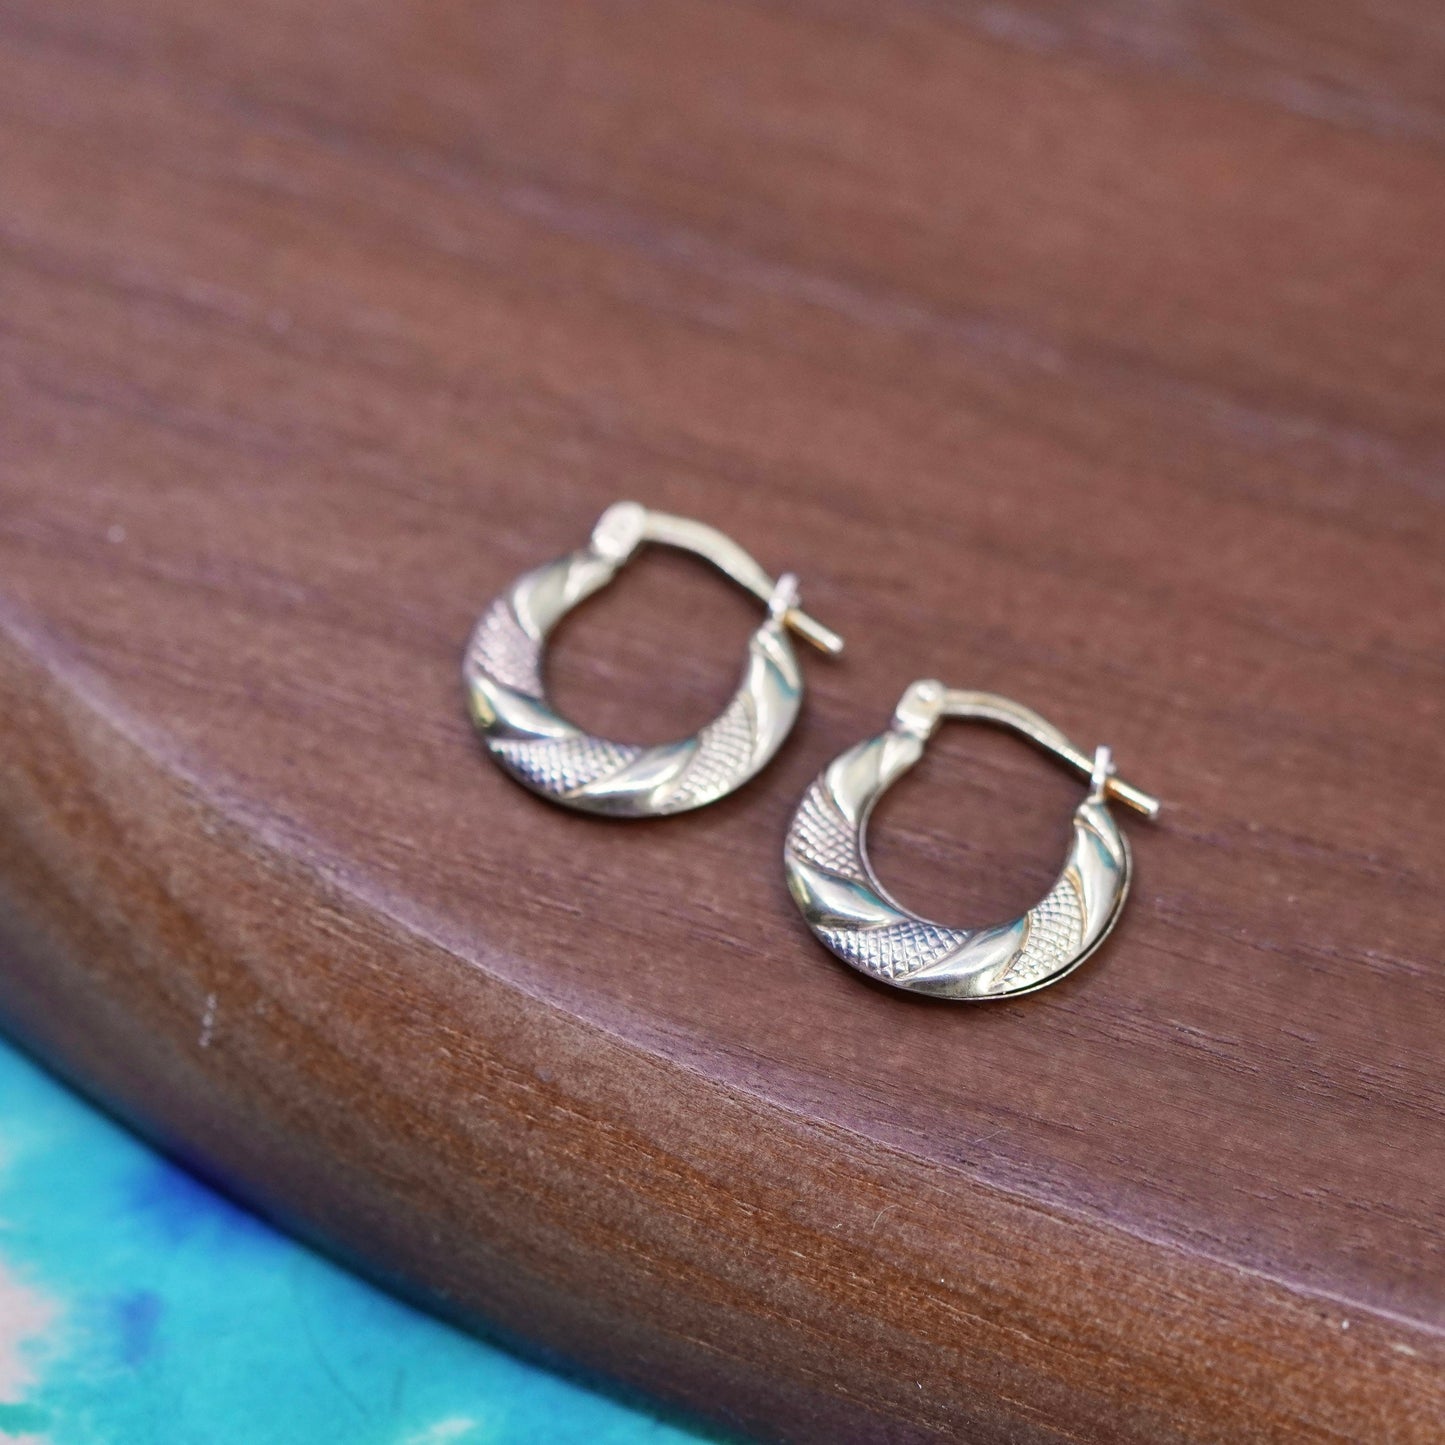 0.5”, 1/10 10K yellow gold Sterling silver textured hoop earrings, 925 huggie